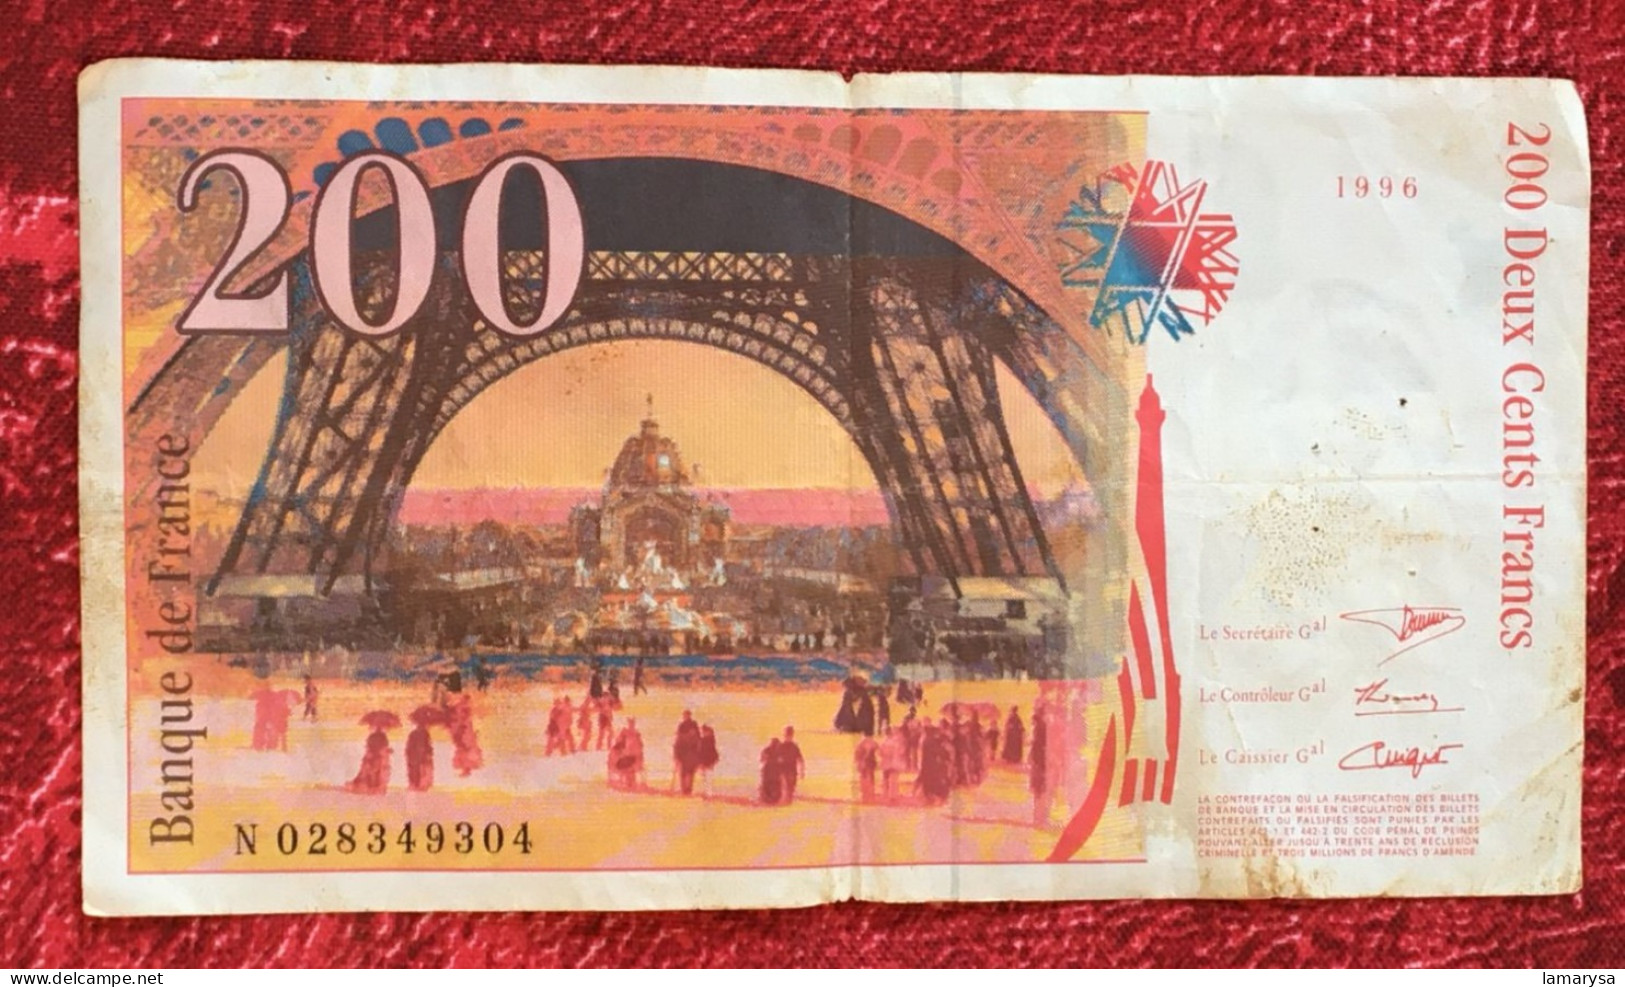 Monnaie & Billet De Banque Bank-Billet De France 1996 Dernière Gamme 200 F 1995-1999 ''Eiffel'' - 200 F 1995-1999 ''Eiffel''